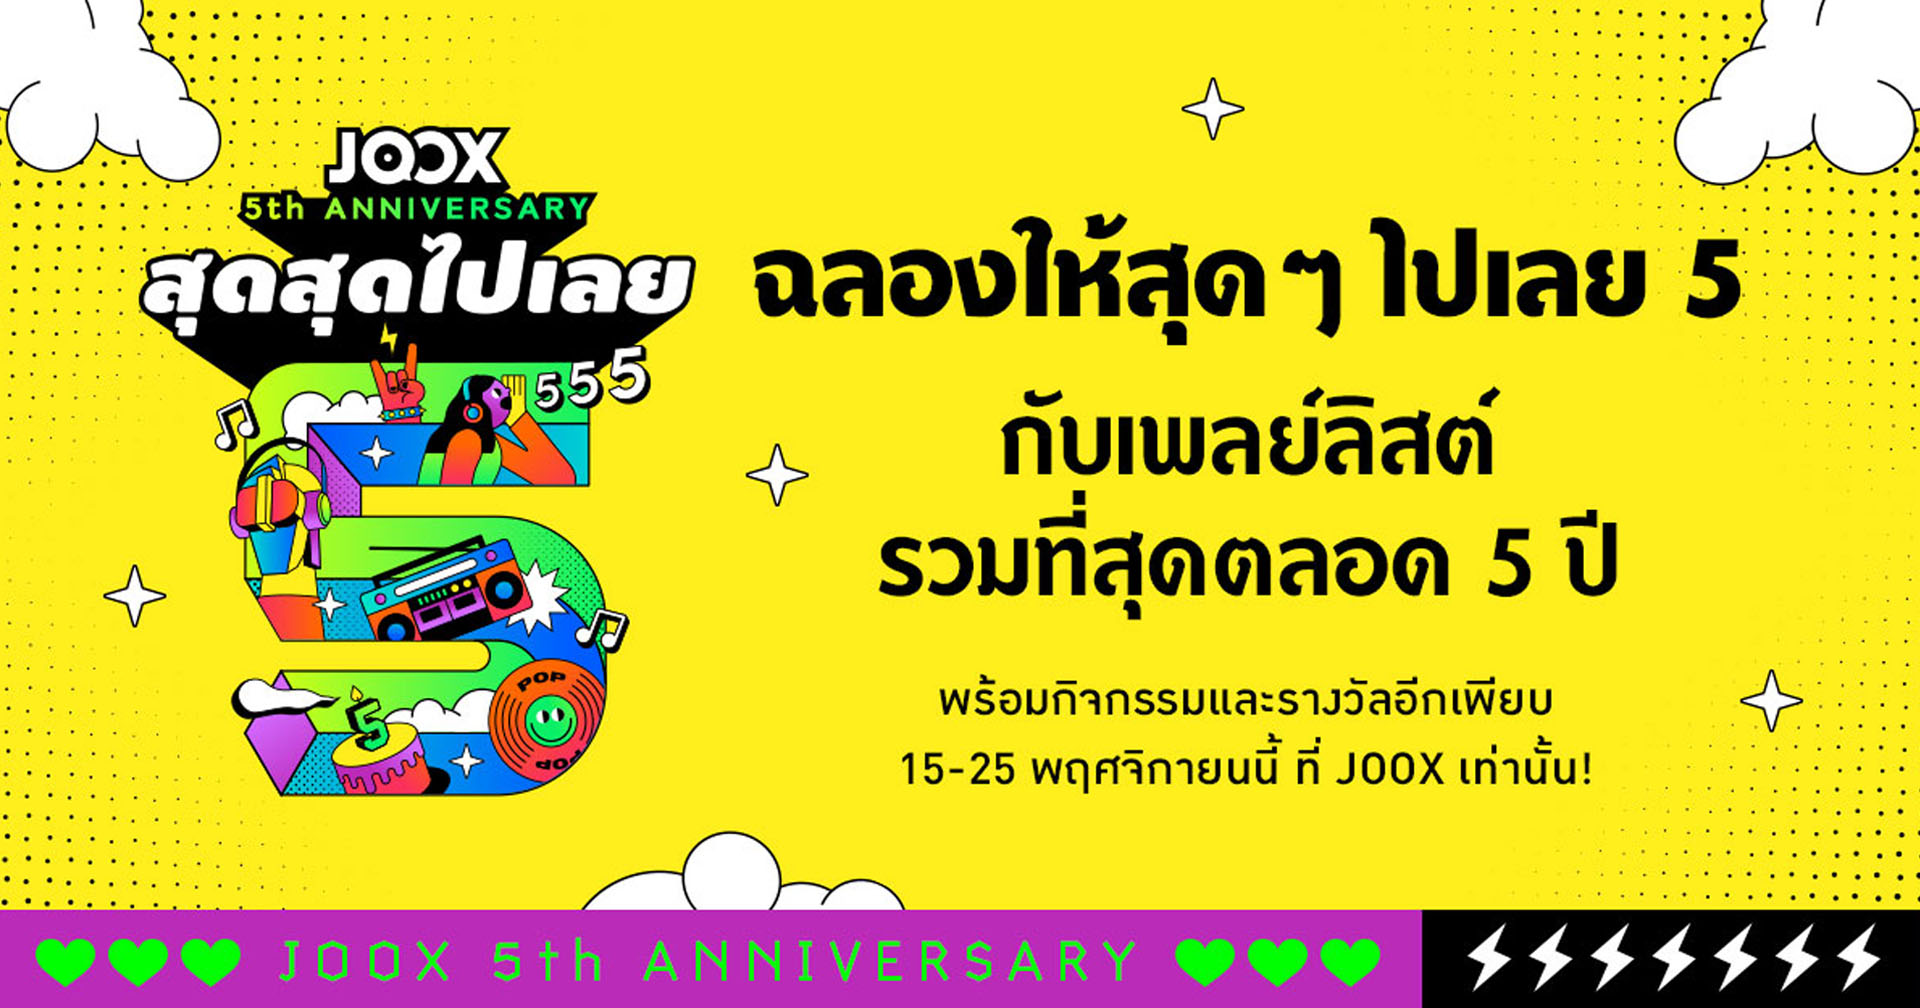 JOOX ฉลอง 5 ปีแห่งความสำเร็จ ยืนหนึ่งผู้นำ ‘แอปมิวสิคคอมมูนิตี้ และความบันเทิงของไทย’